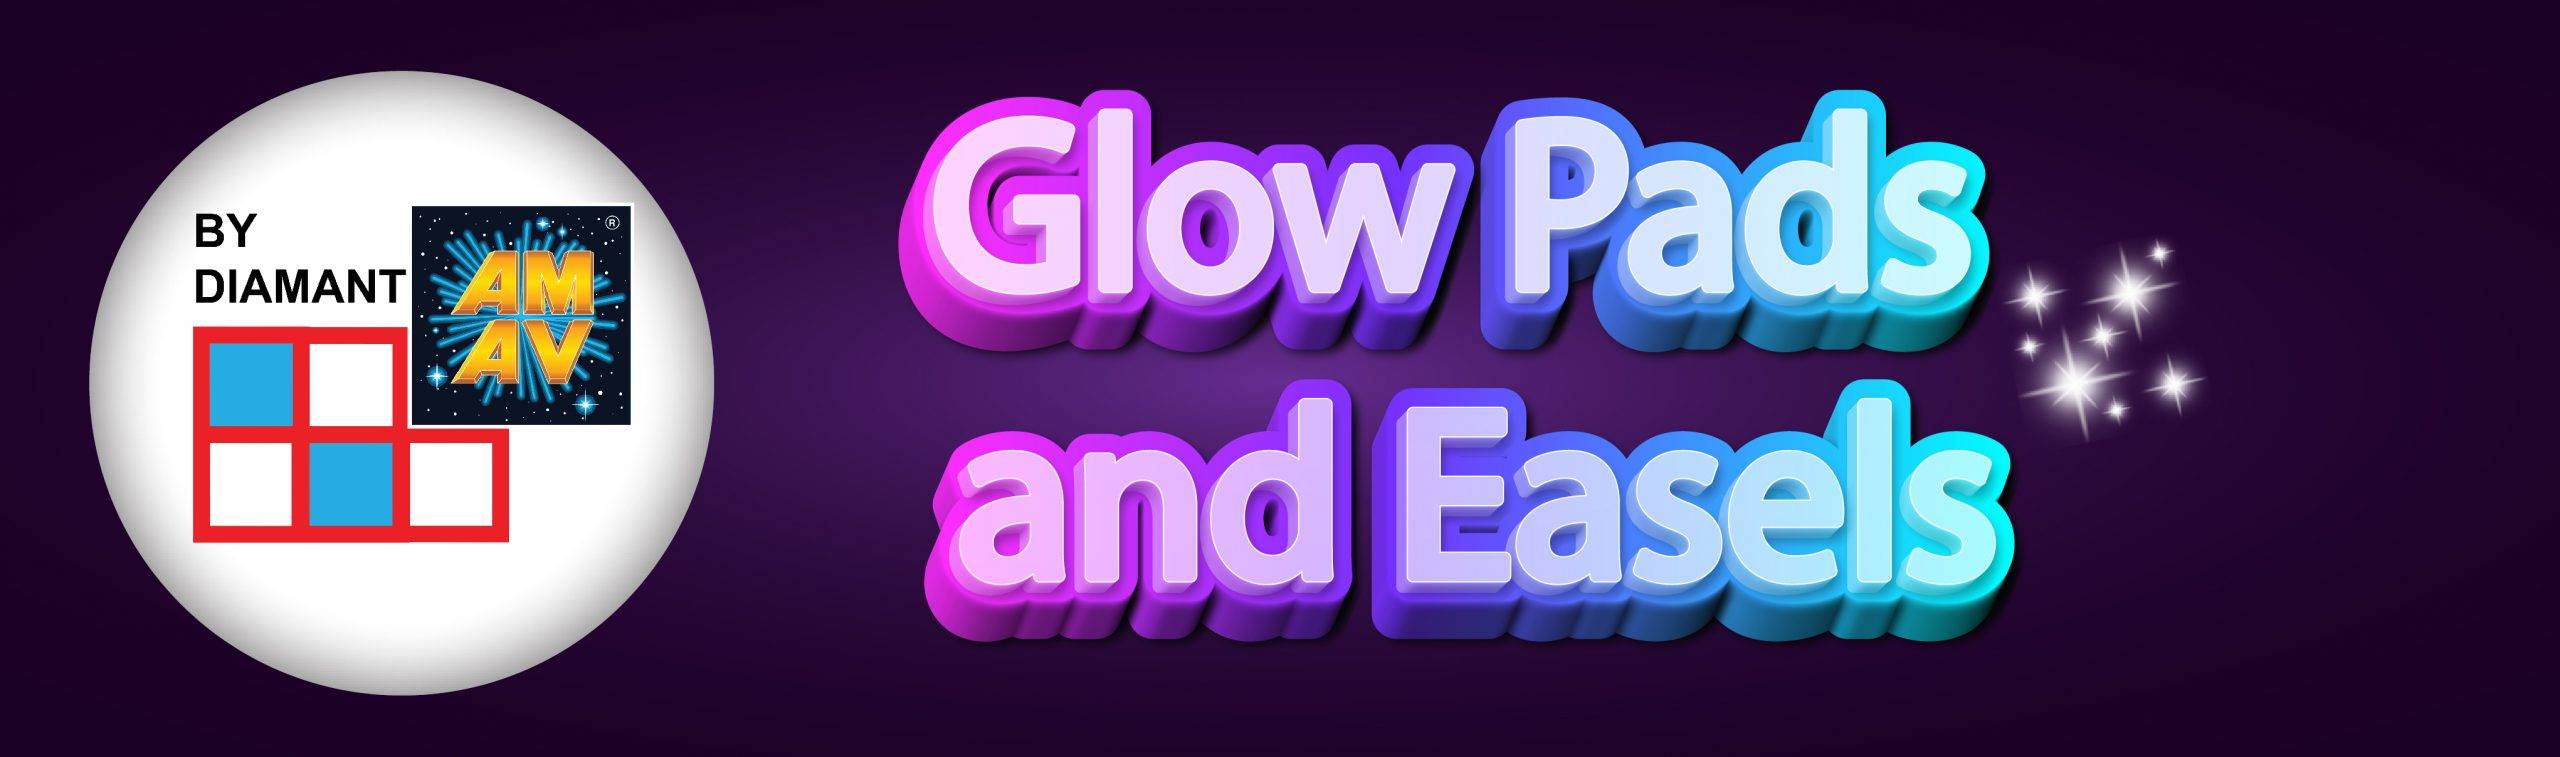 Glow Pad - Stencil Glow Pad